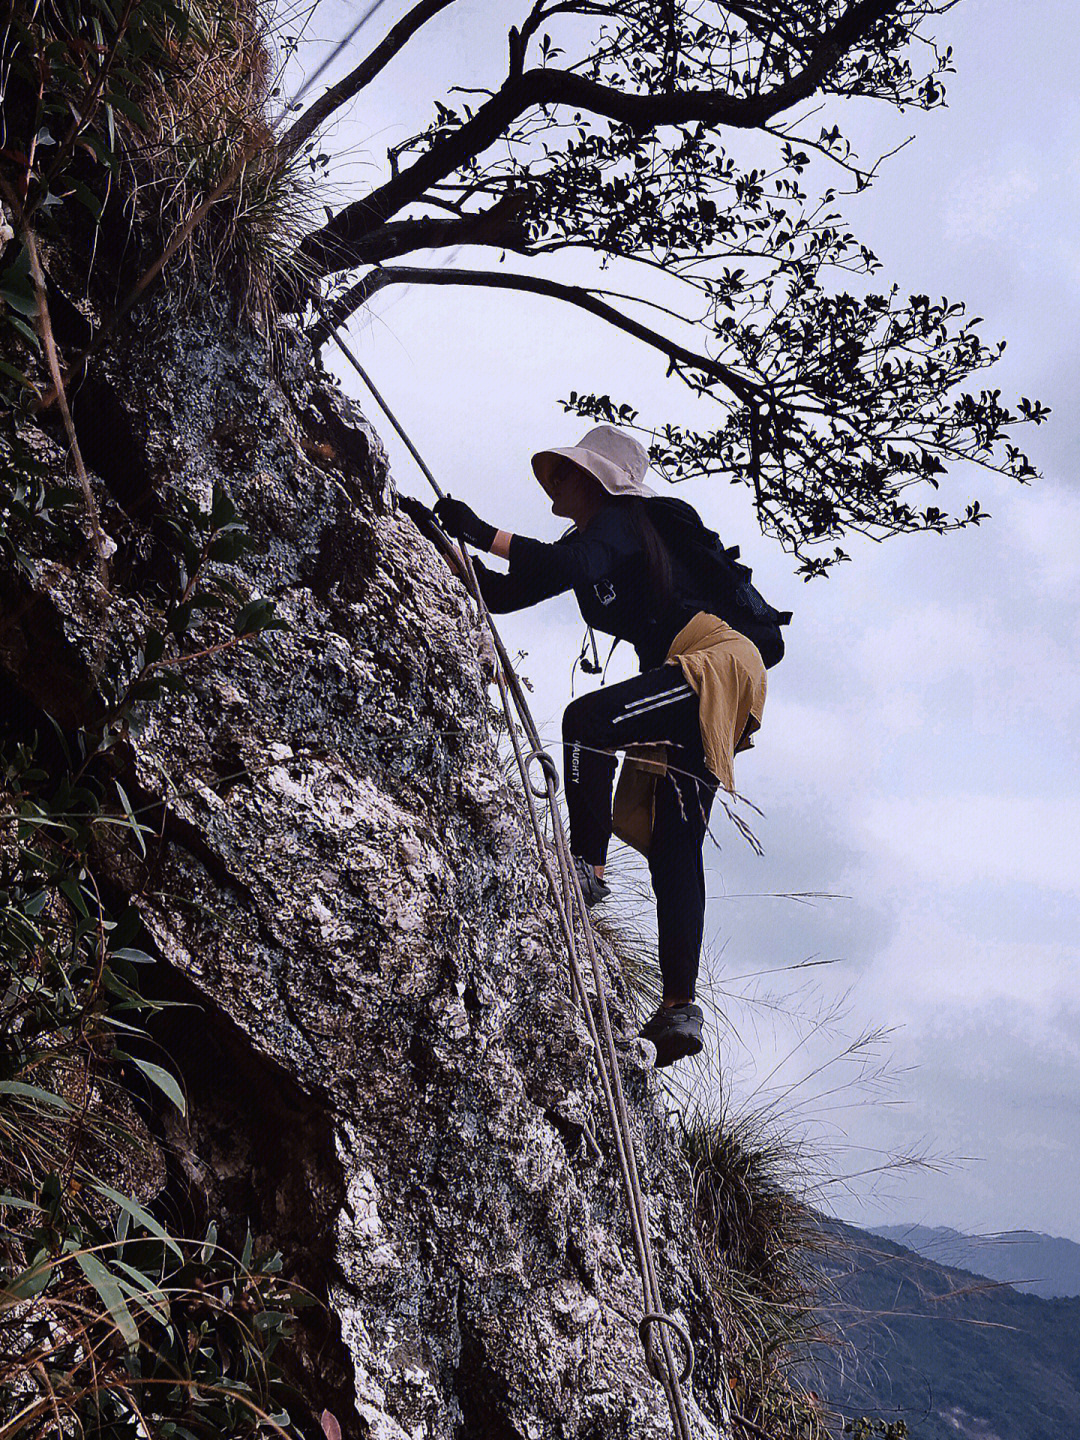 的体能有数处陡崖需用绳索攀爬(恐高和平衡感差的要慎重考虑)风景指数